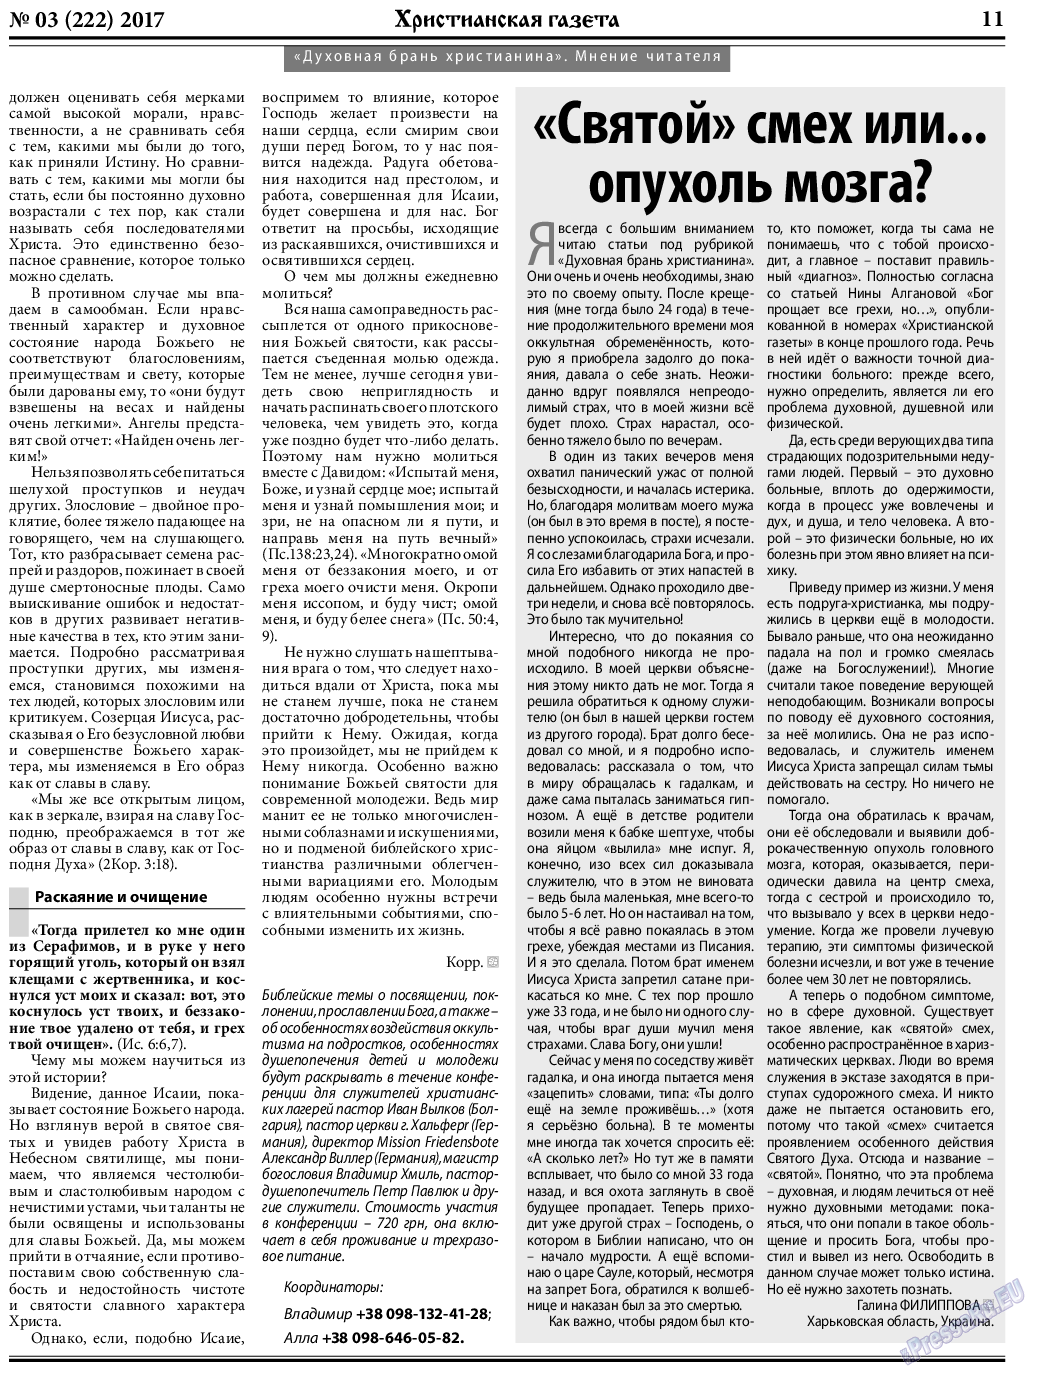 Христианская газета, газета. 2017 №3 стр.11